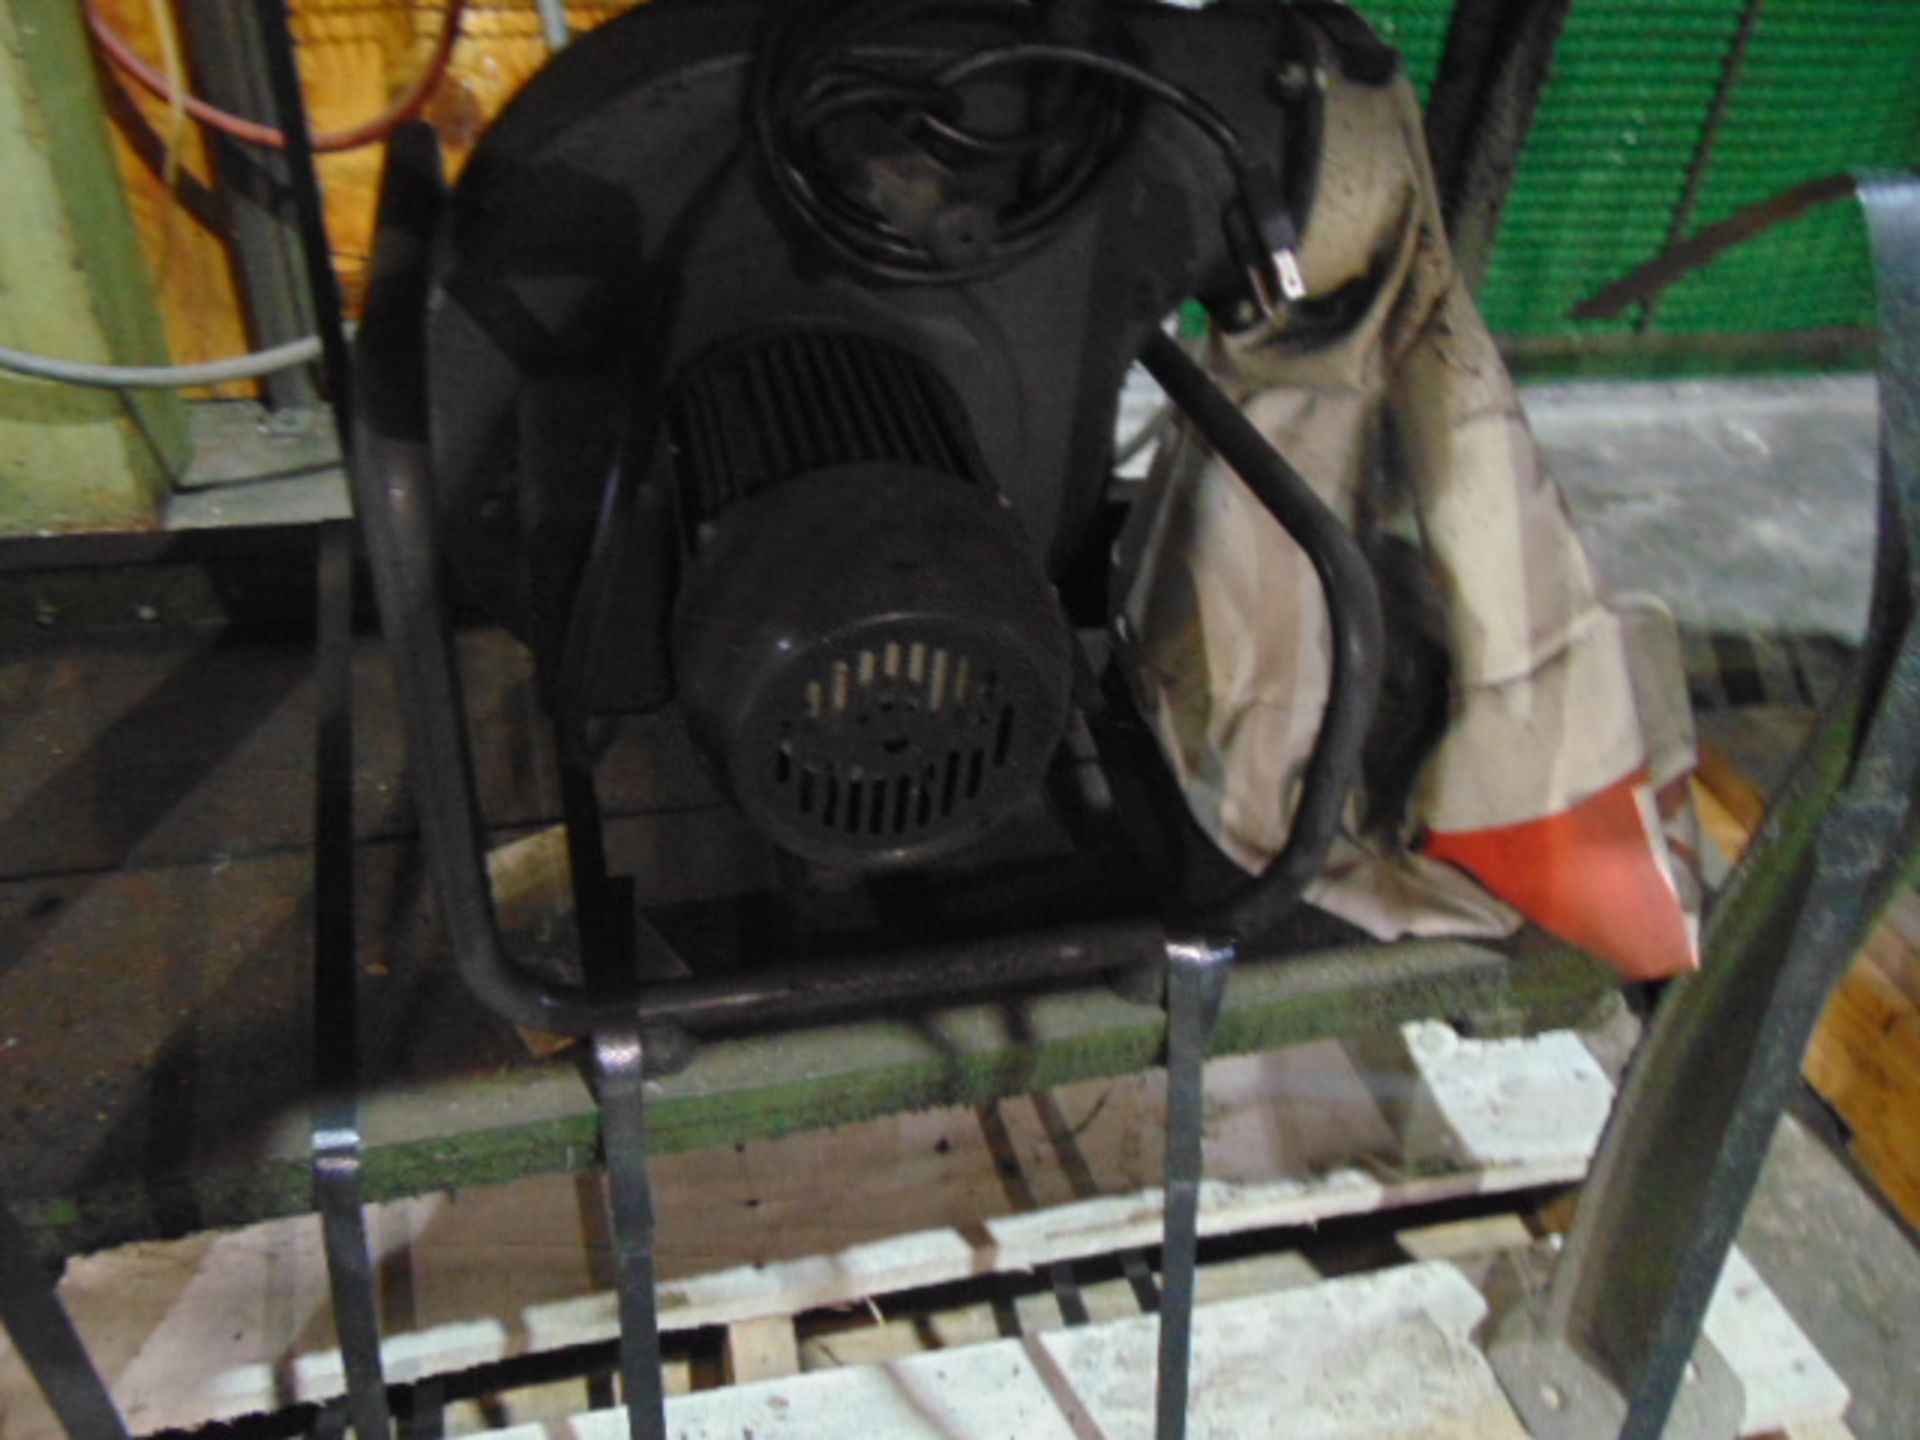 LOT CONSISTING OF: Jet 1" belt sander, single end bench grinder, 1" belt sander, dust collector & - Image 5 of 5